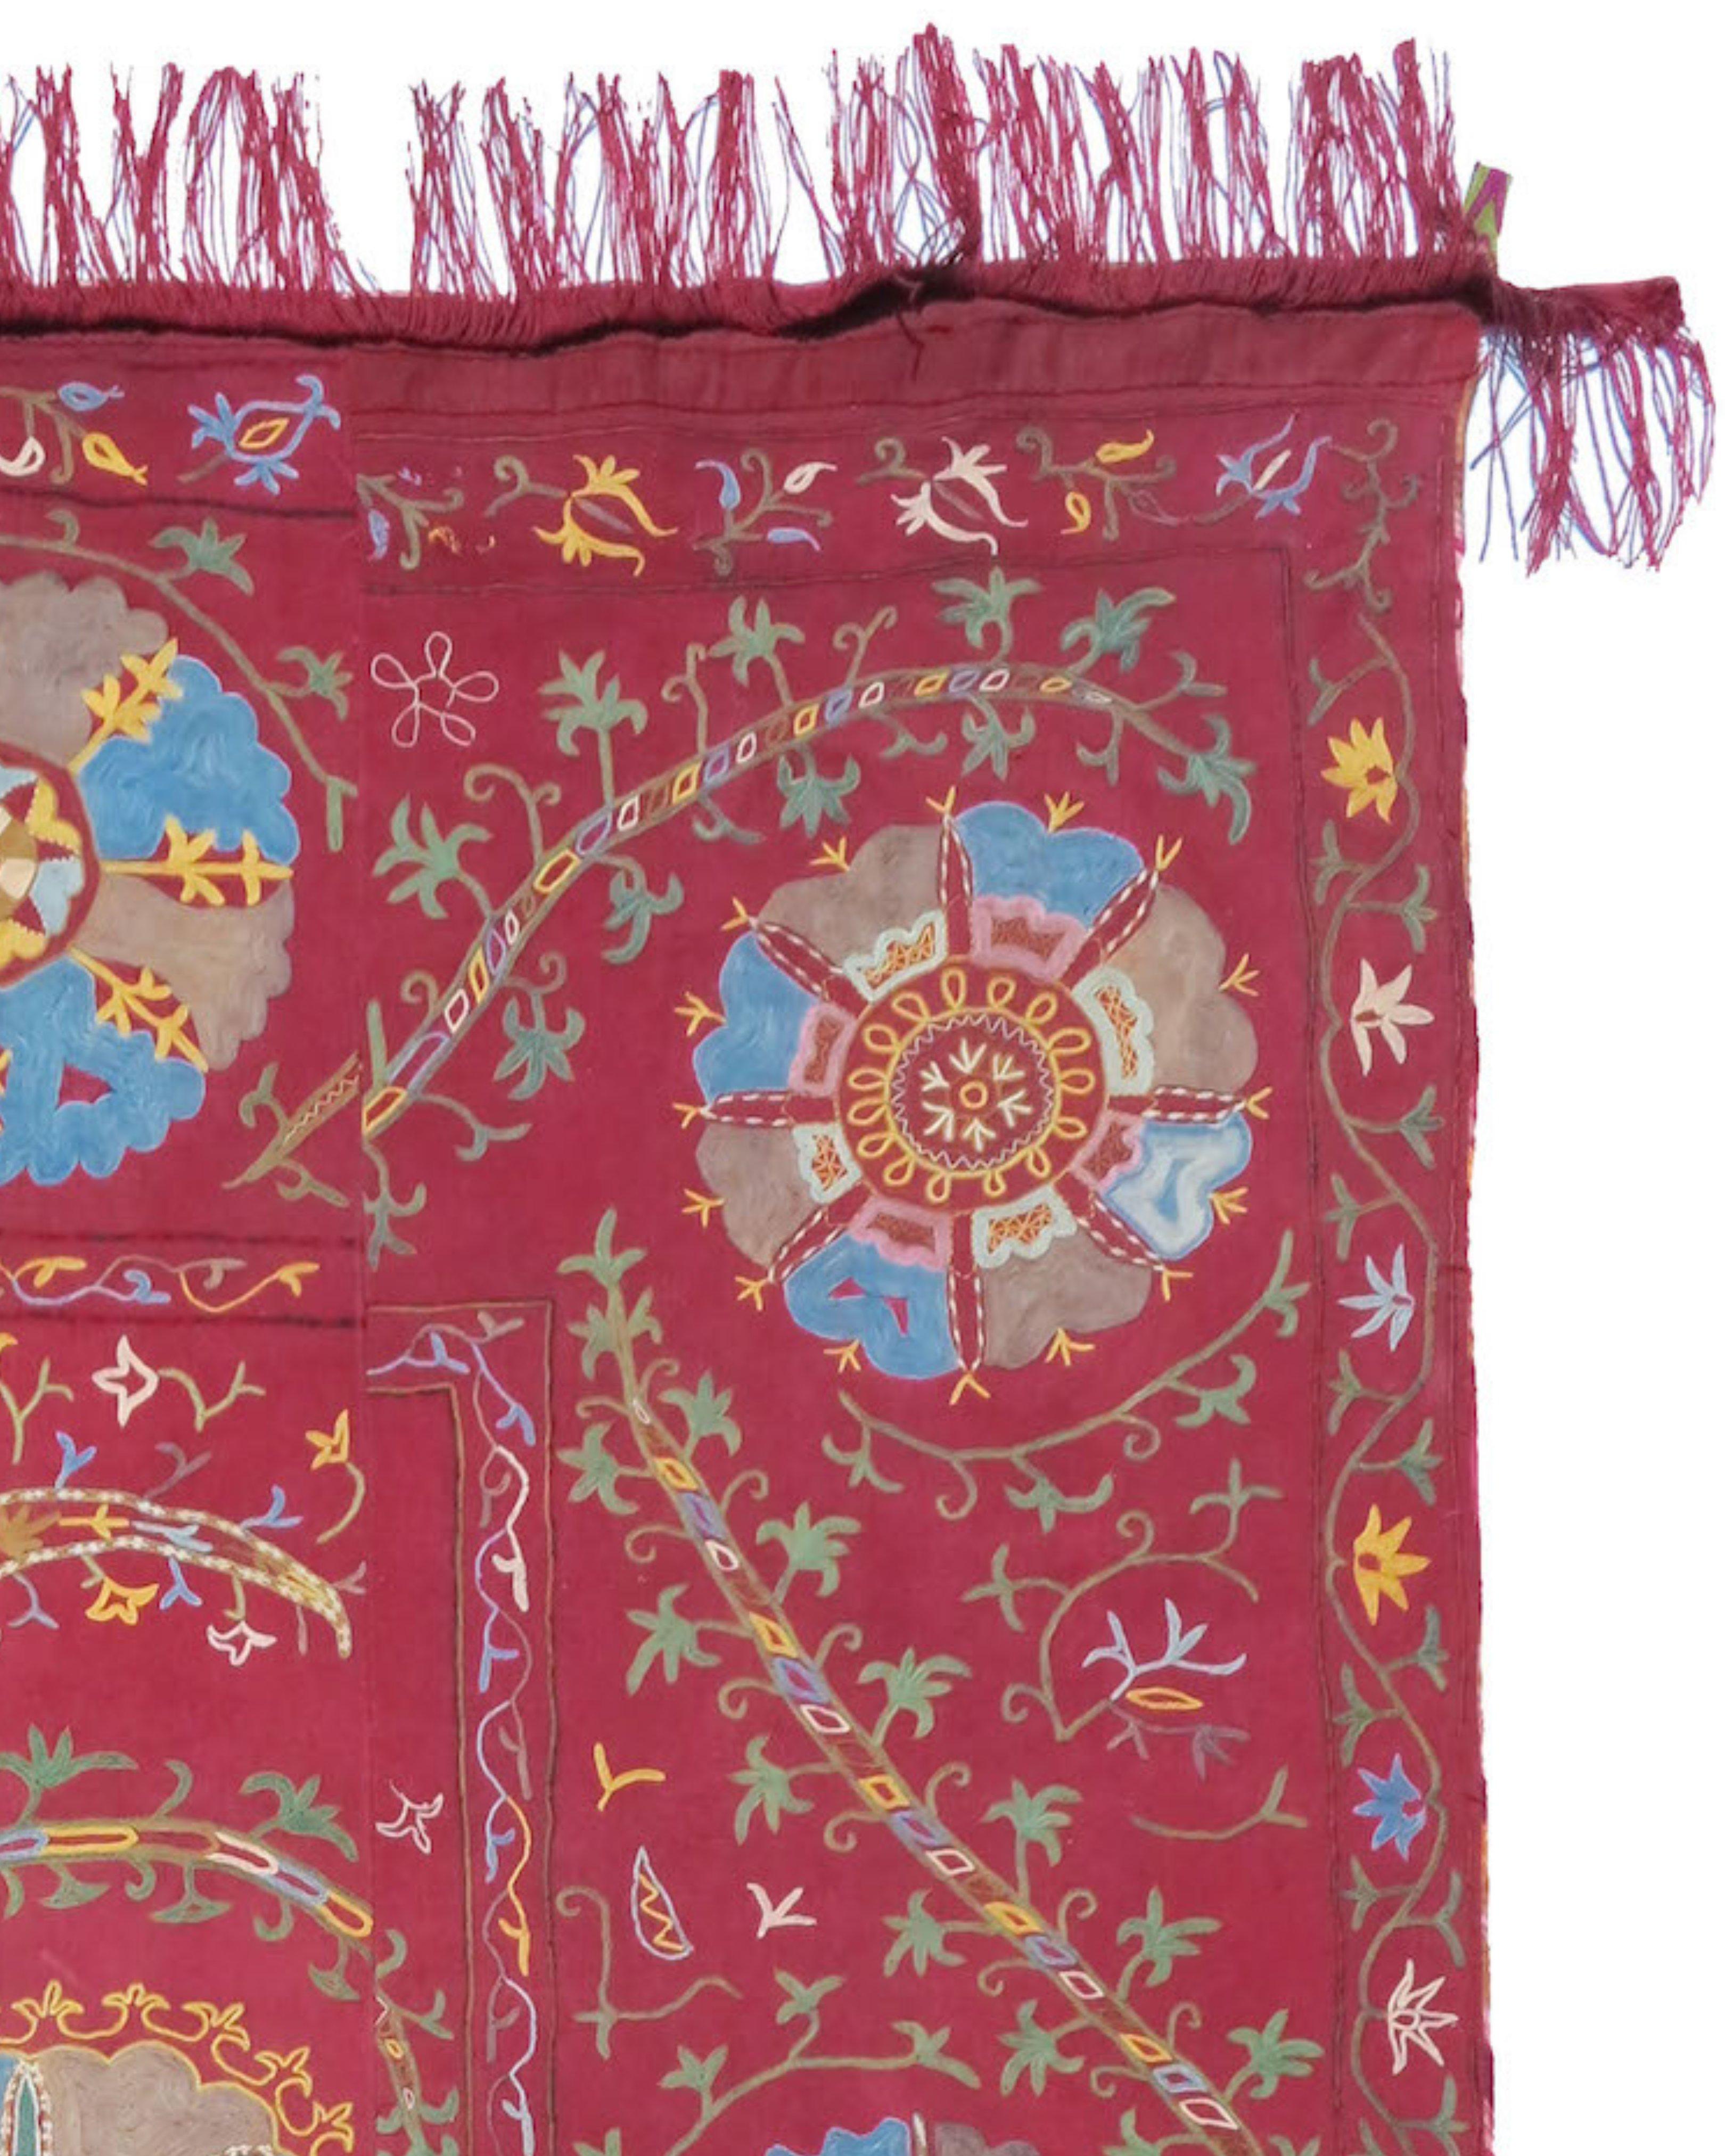 Zentralasiatischer Suzani-Teppich, Mitte des 19. Jahrhunderts

Zusätzliche Informationen:
Abmessungen: 5'2